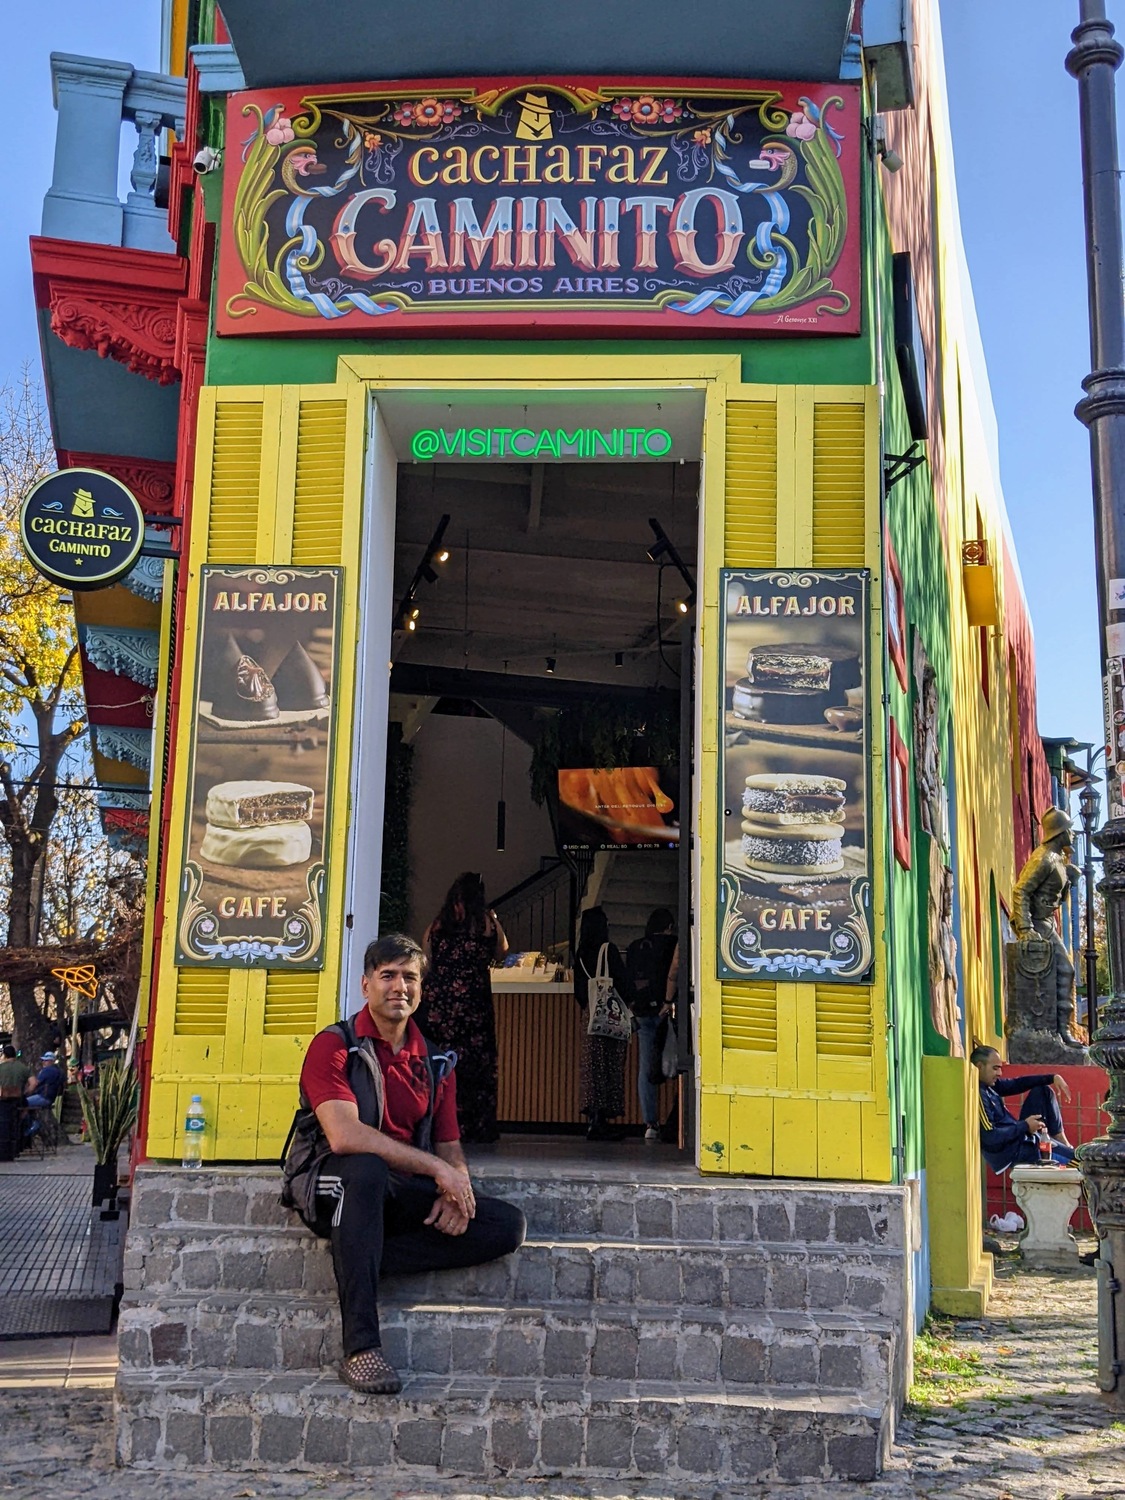 El Caminito in La Boca neighborhood - great food and souvenier options here